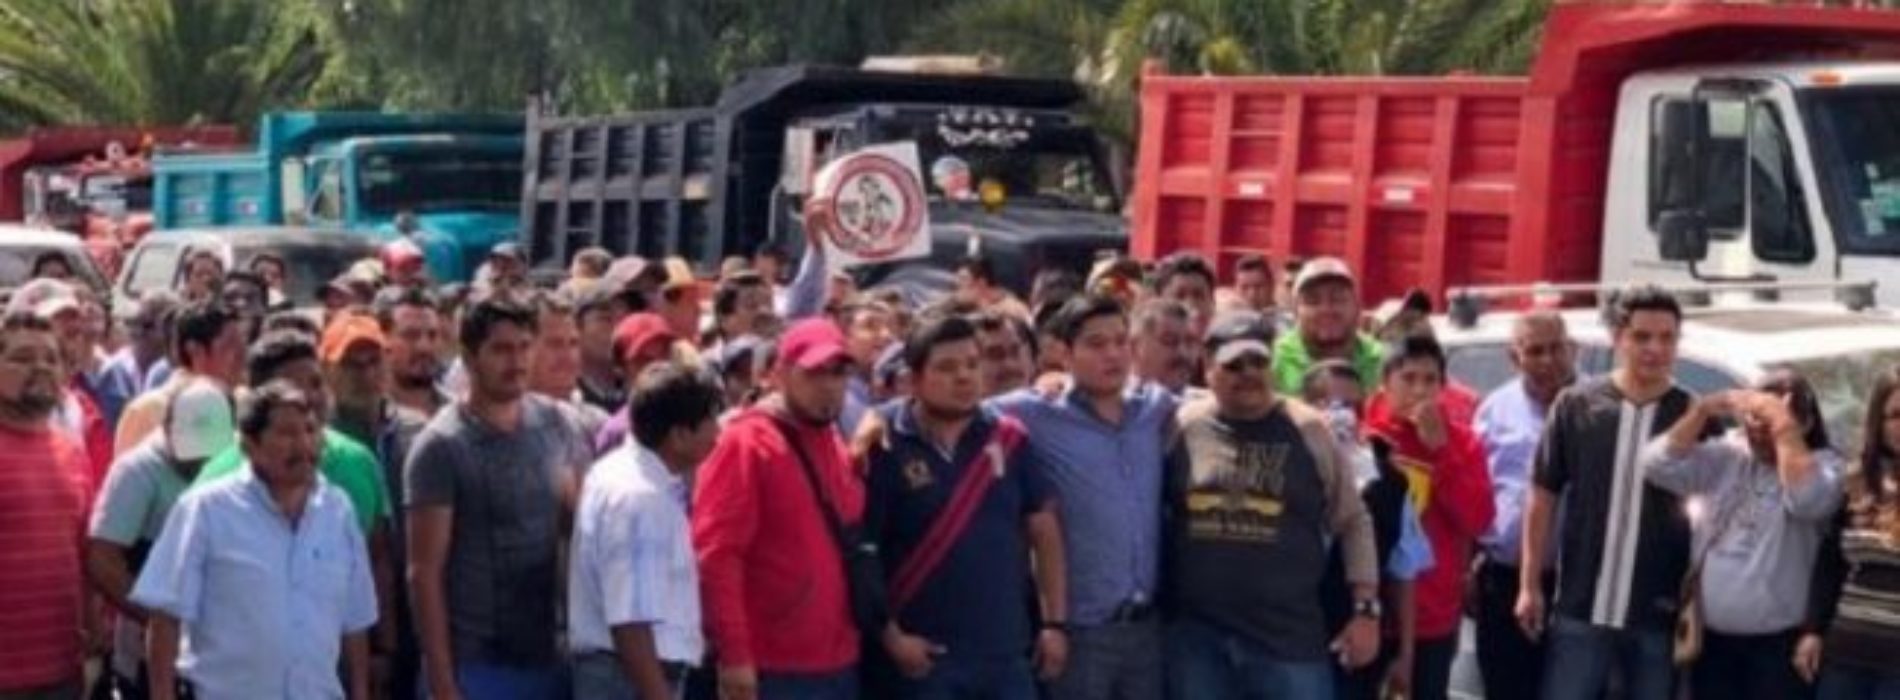 Tras ola de violencia se dividen sindicatos de
transportistas en Oaxaca